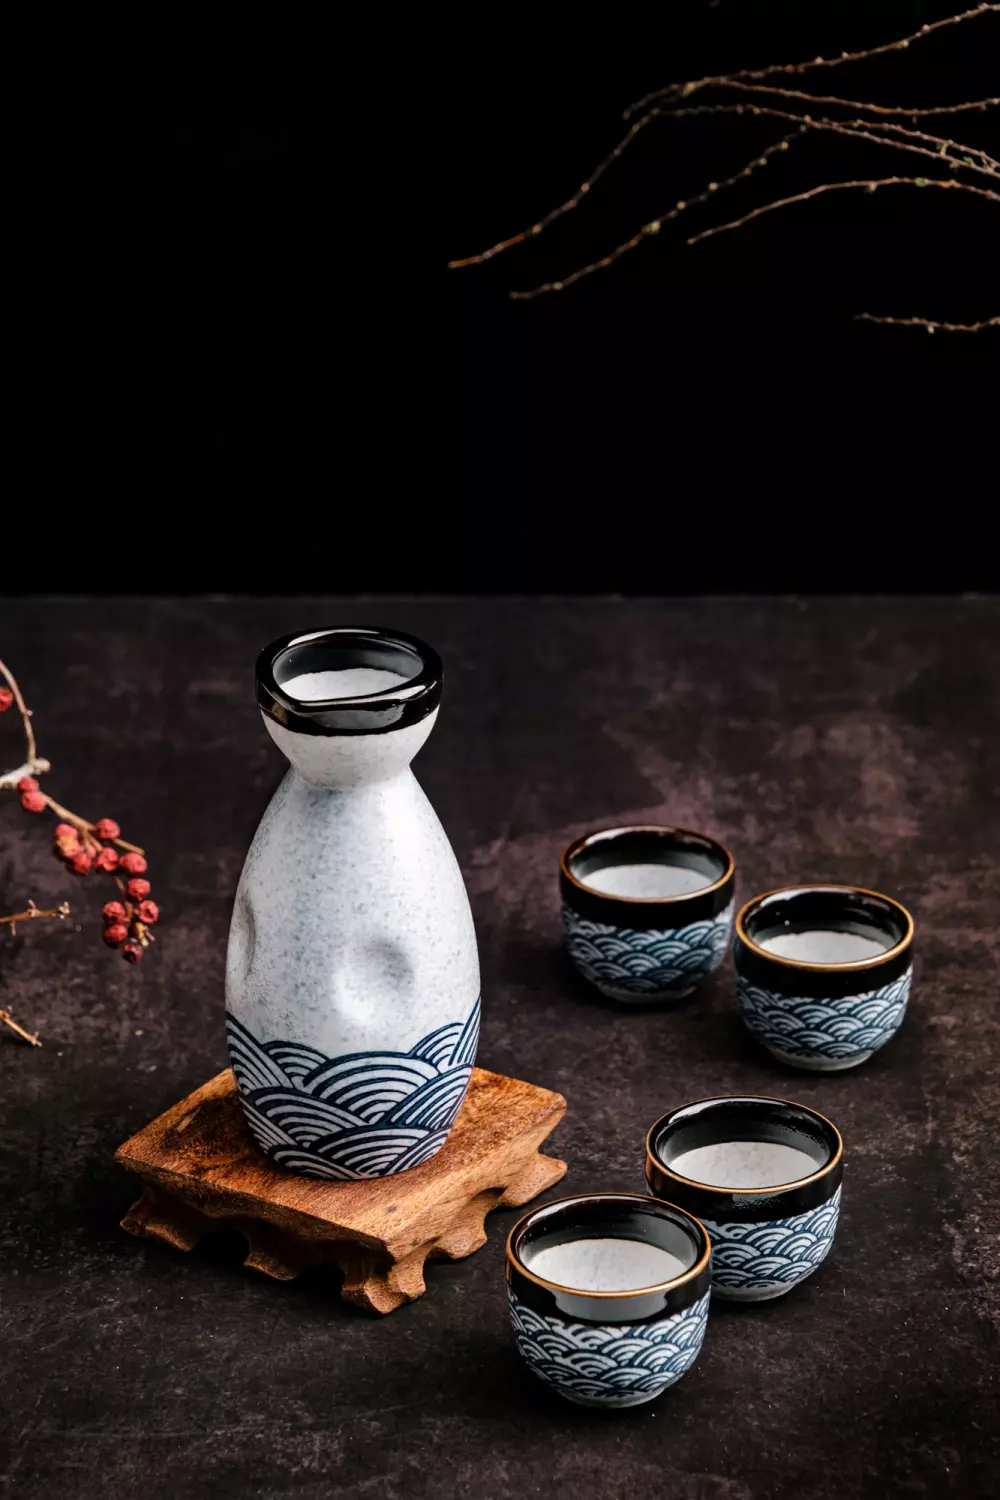 Traditional Sake Set  Japanese Sake Set With 1 Sake Carafe Bottle And 4  Sake Cups - TrueKatana